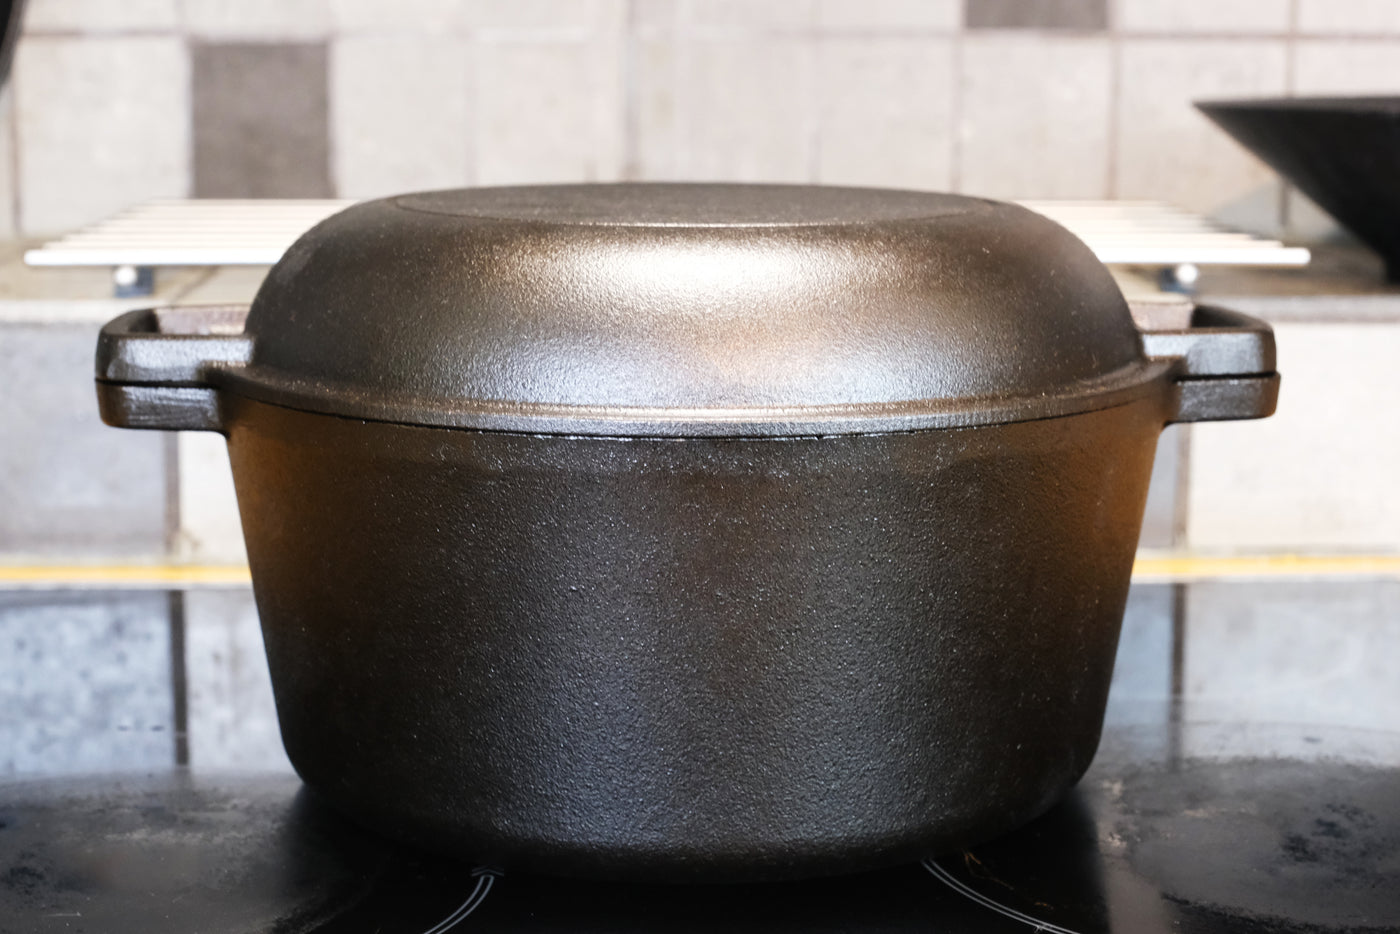 Forno olandese in ghisa con coperchio della padella - 10,23" (26 cm) di diametro, 4,8 l - Pentola multifornello per friggere, cucinare, cuocere e grigliare